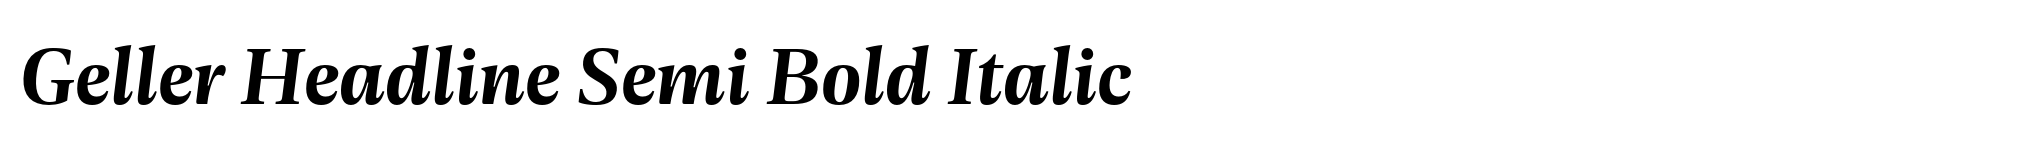 Geller Headline Semi Bold Italic image